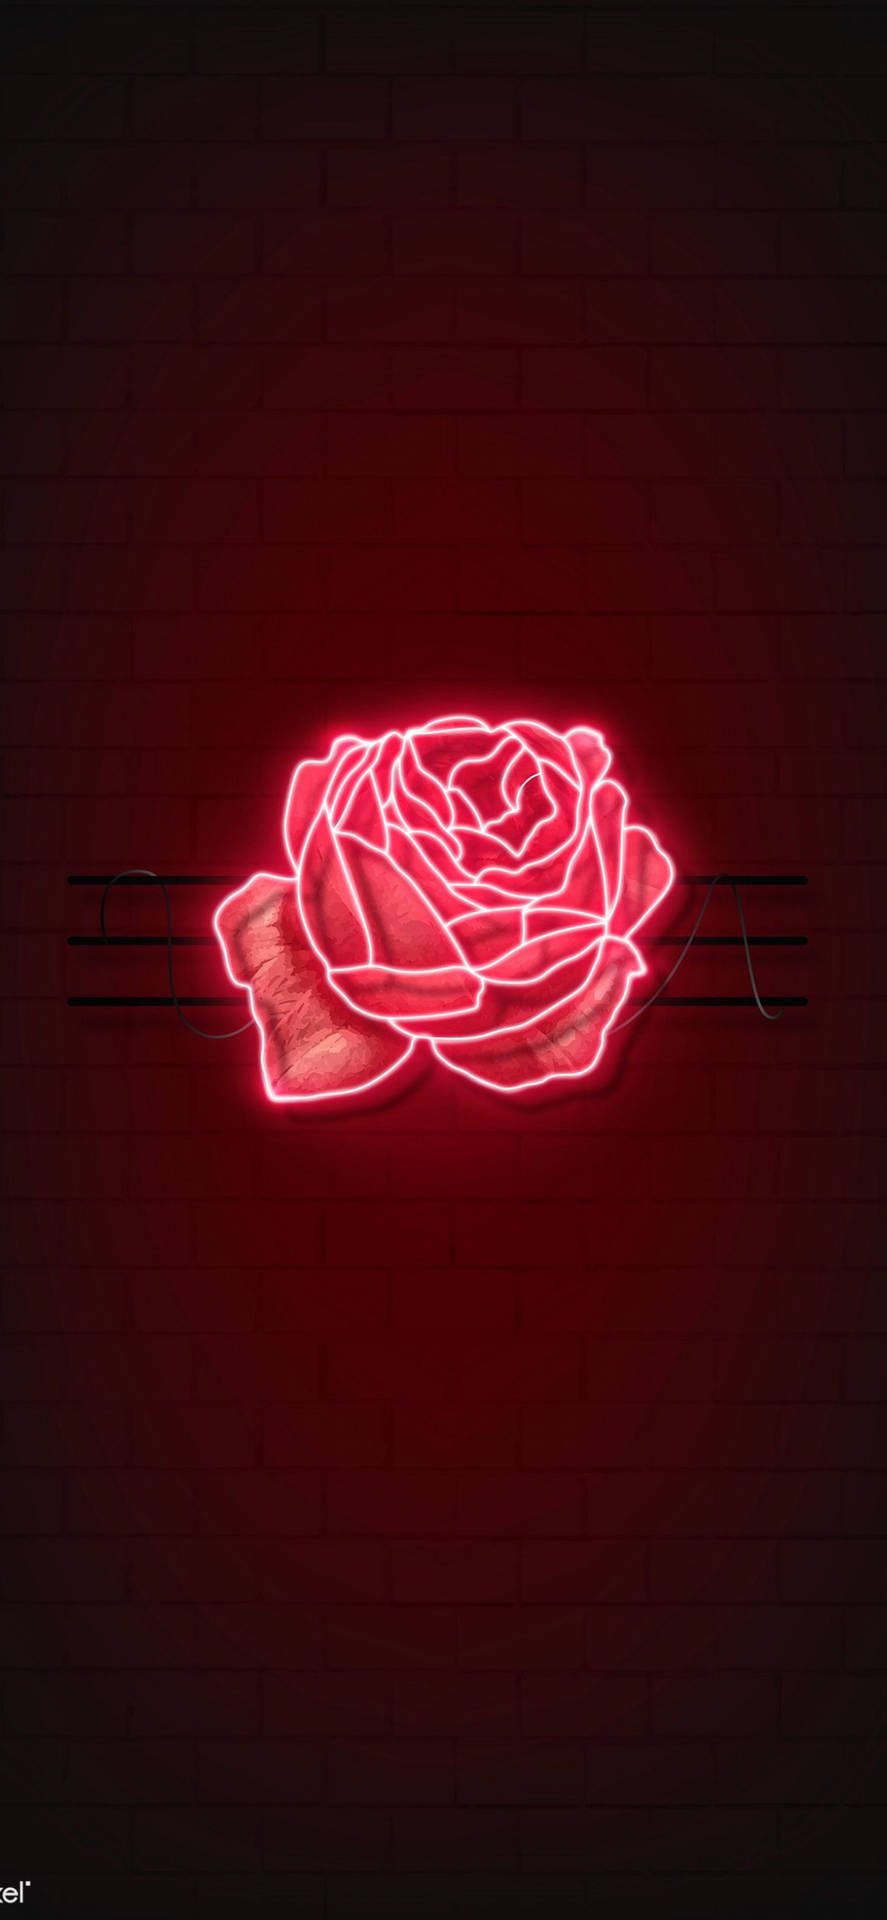 Red Rose LED Light Wallpaper